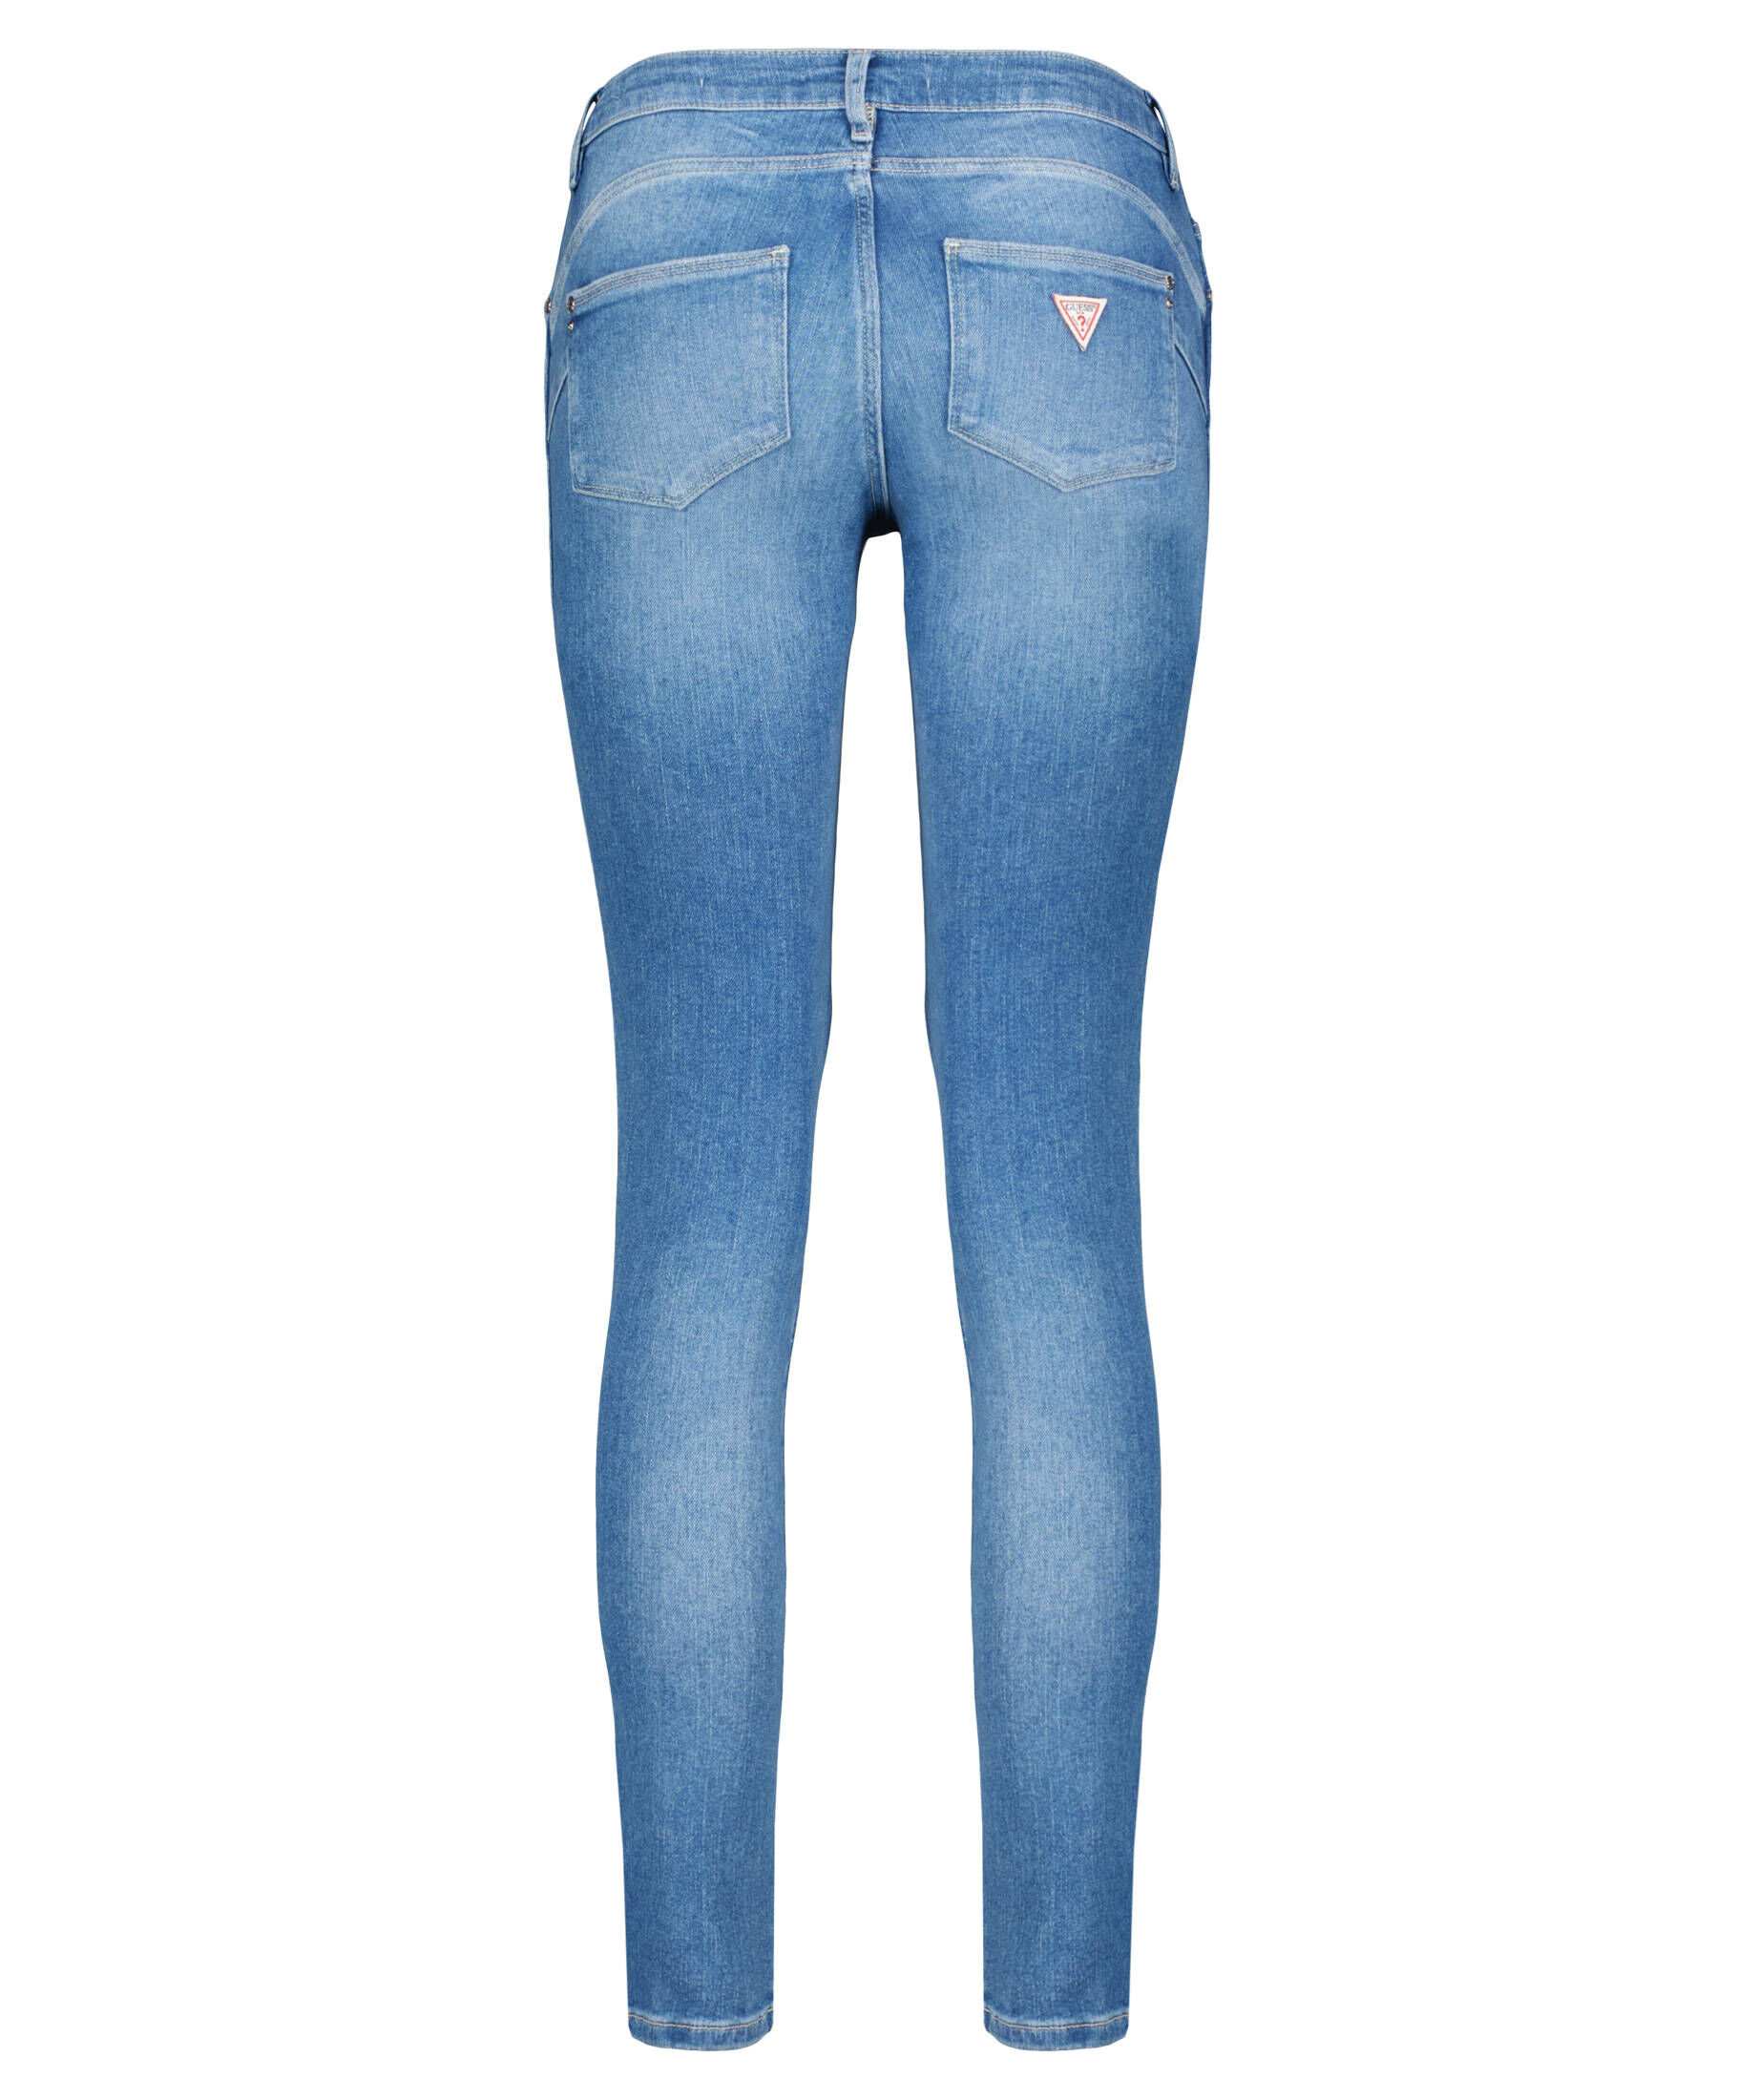 Guess Damen Jeans "Ultra Curve" Fit kaufen | engelhorn